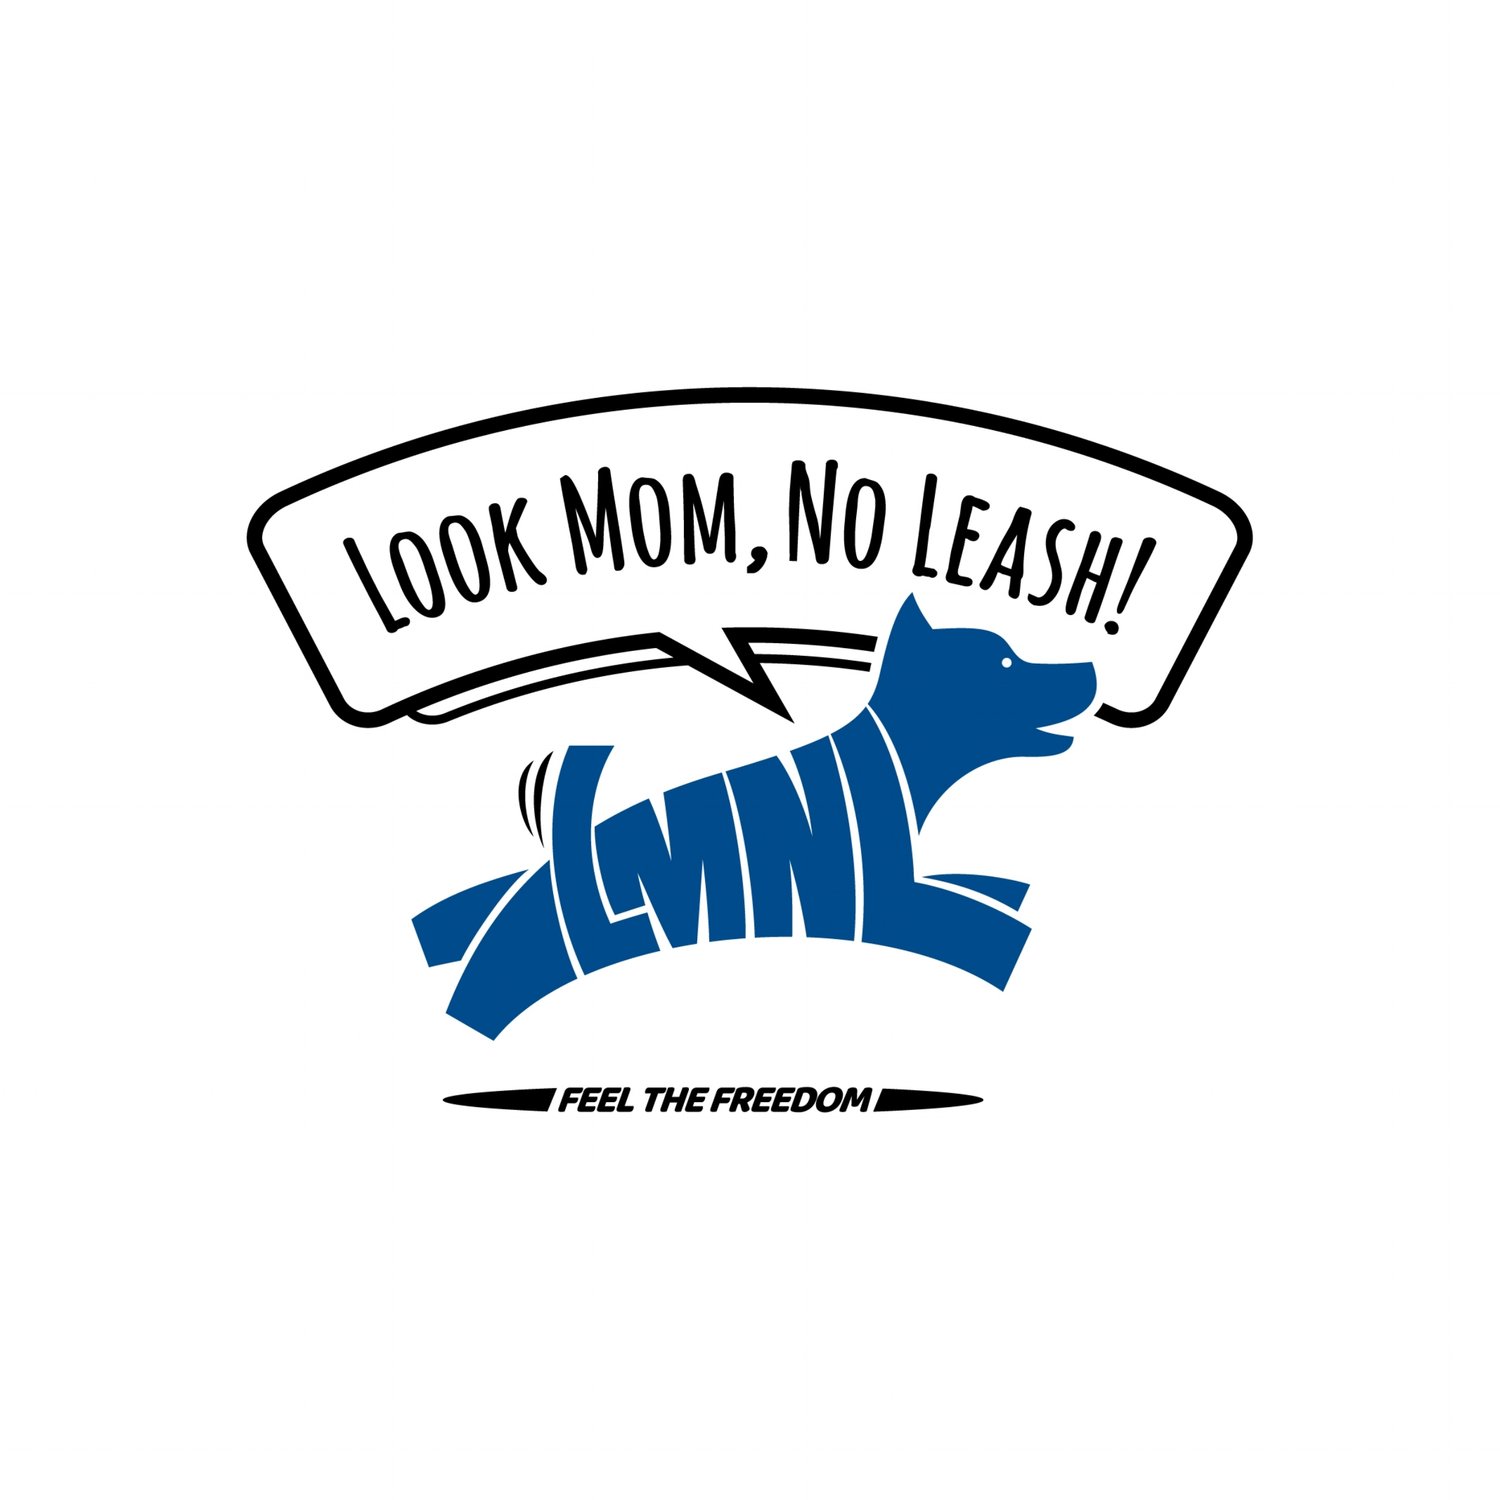 Look Mom, No Leash!